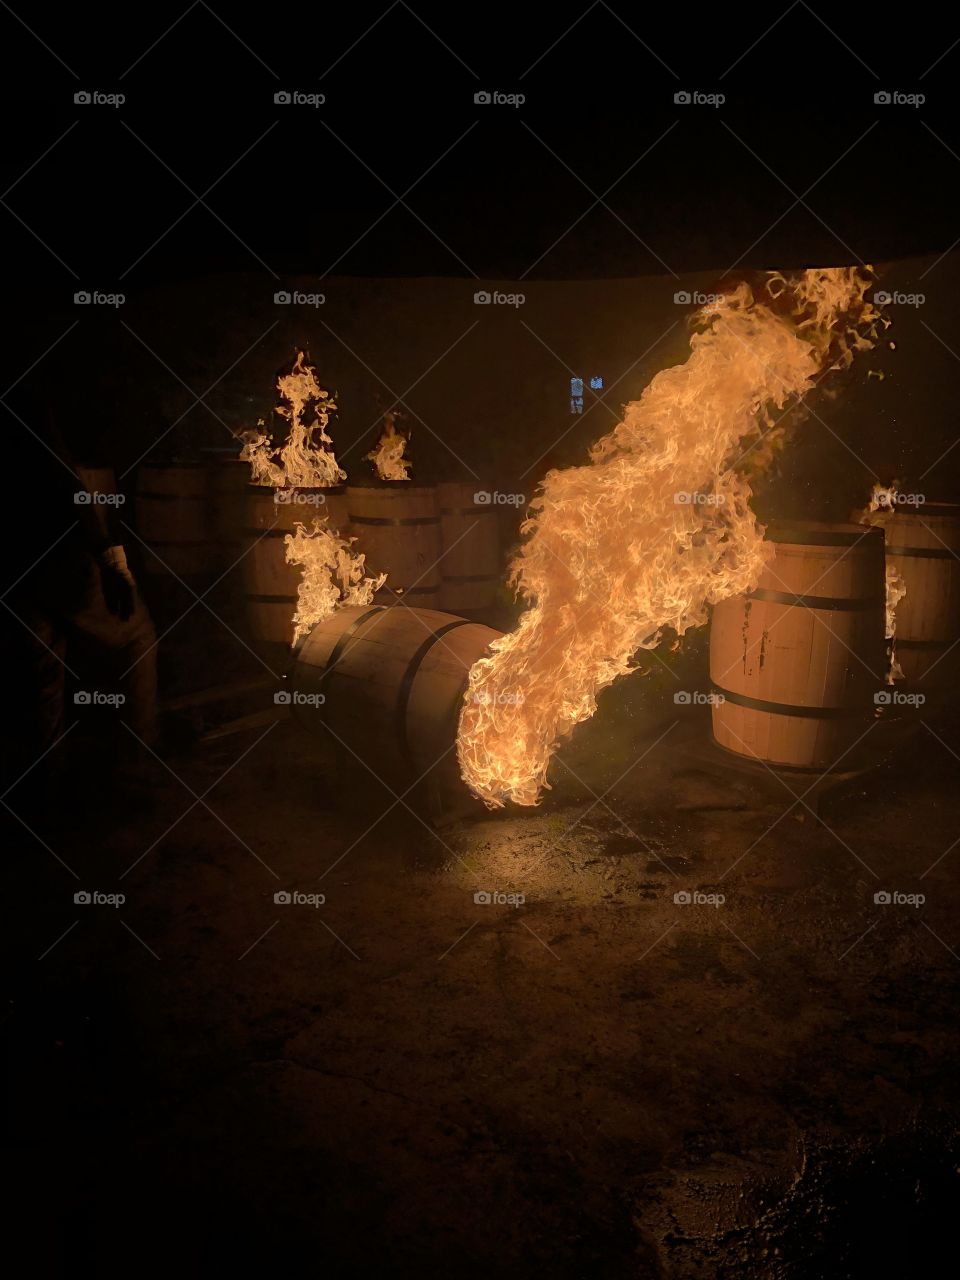 Barrels aflame